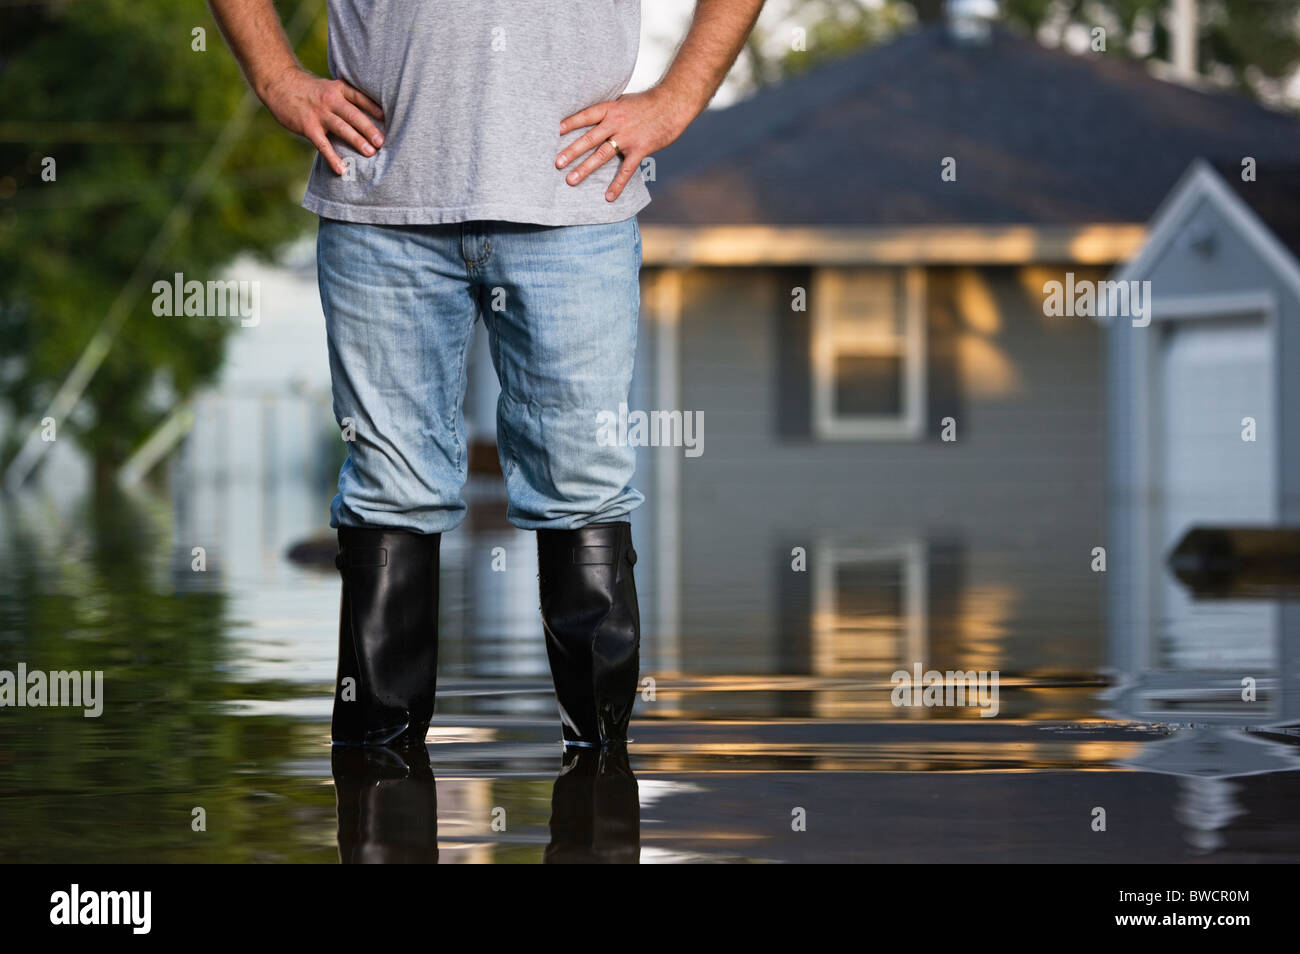 États-unis, Illinois, Chillicothe, Mid adult man standing dans l'eau dans des bottes en caoutchouc, Mid section Banque D'Images